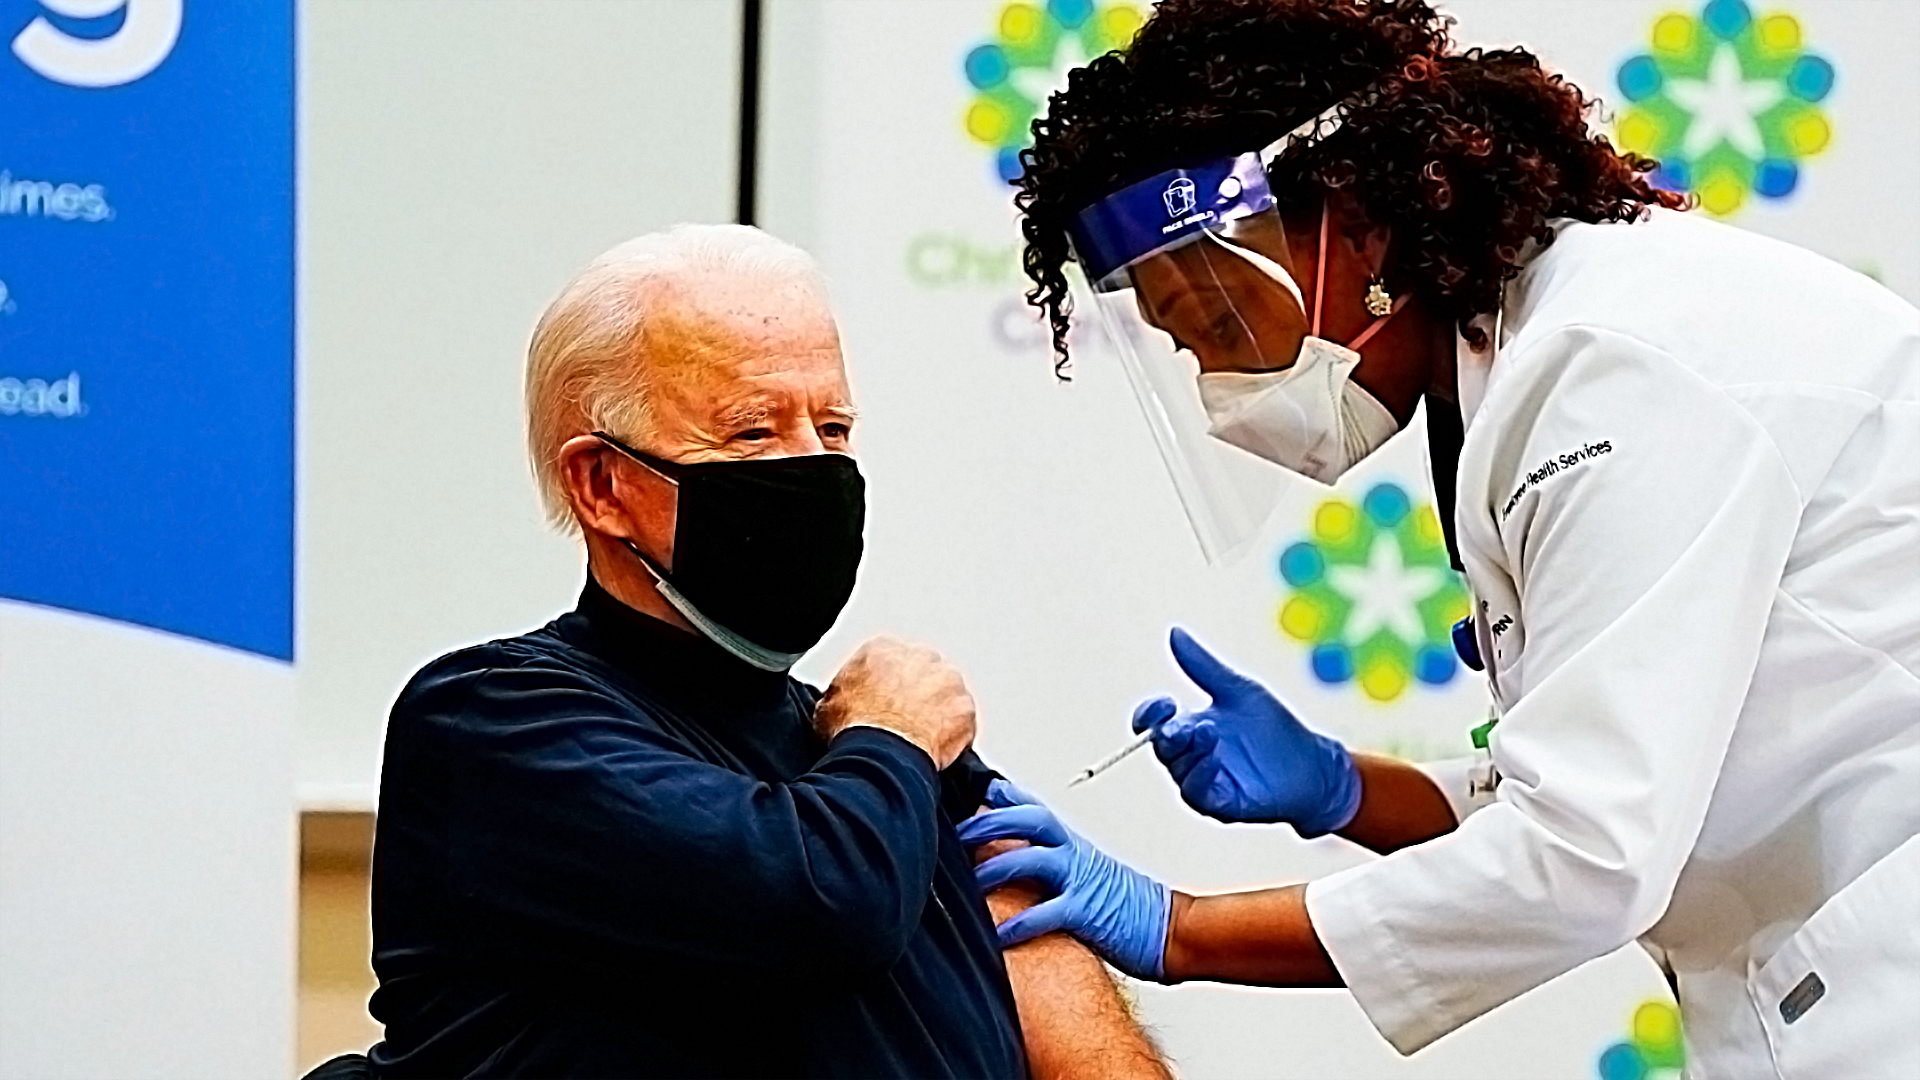 Joe Biden mendapat dosis pertama vaksin COVID-19, mengatakan ‘tidak perlu khawatir’